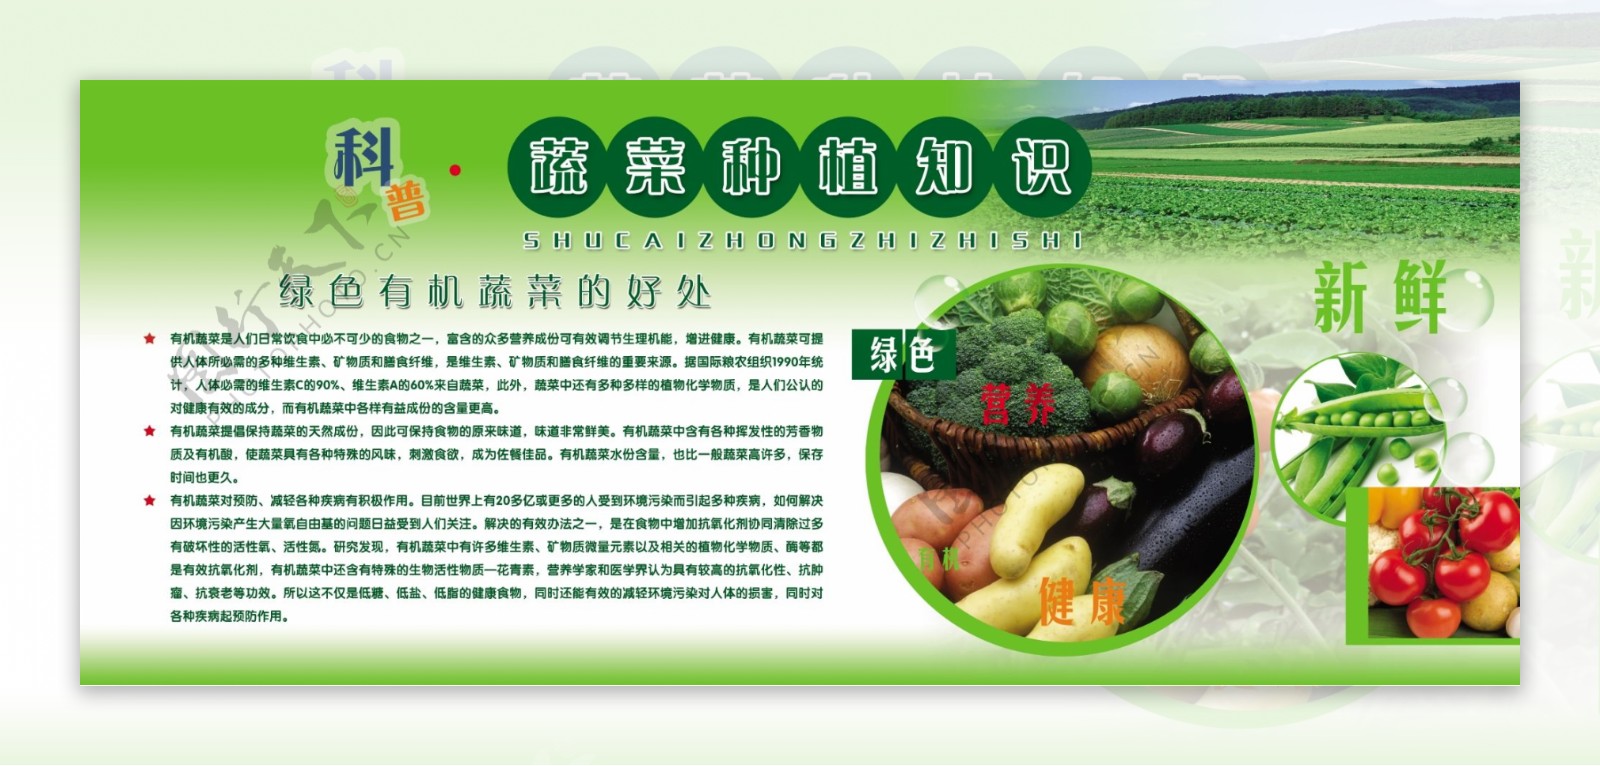 科普蔬菜种植知识展板图片